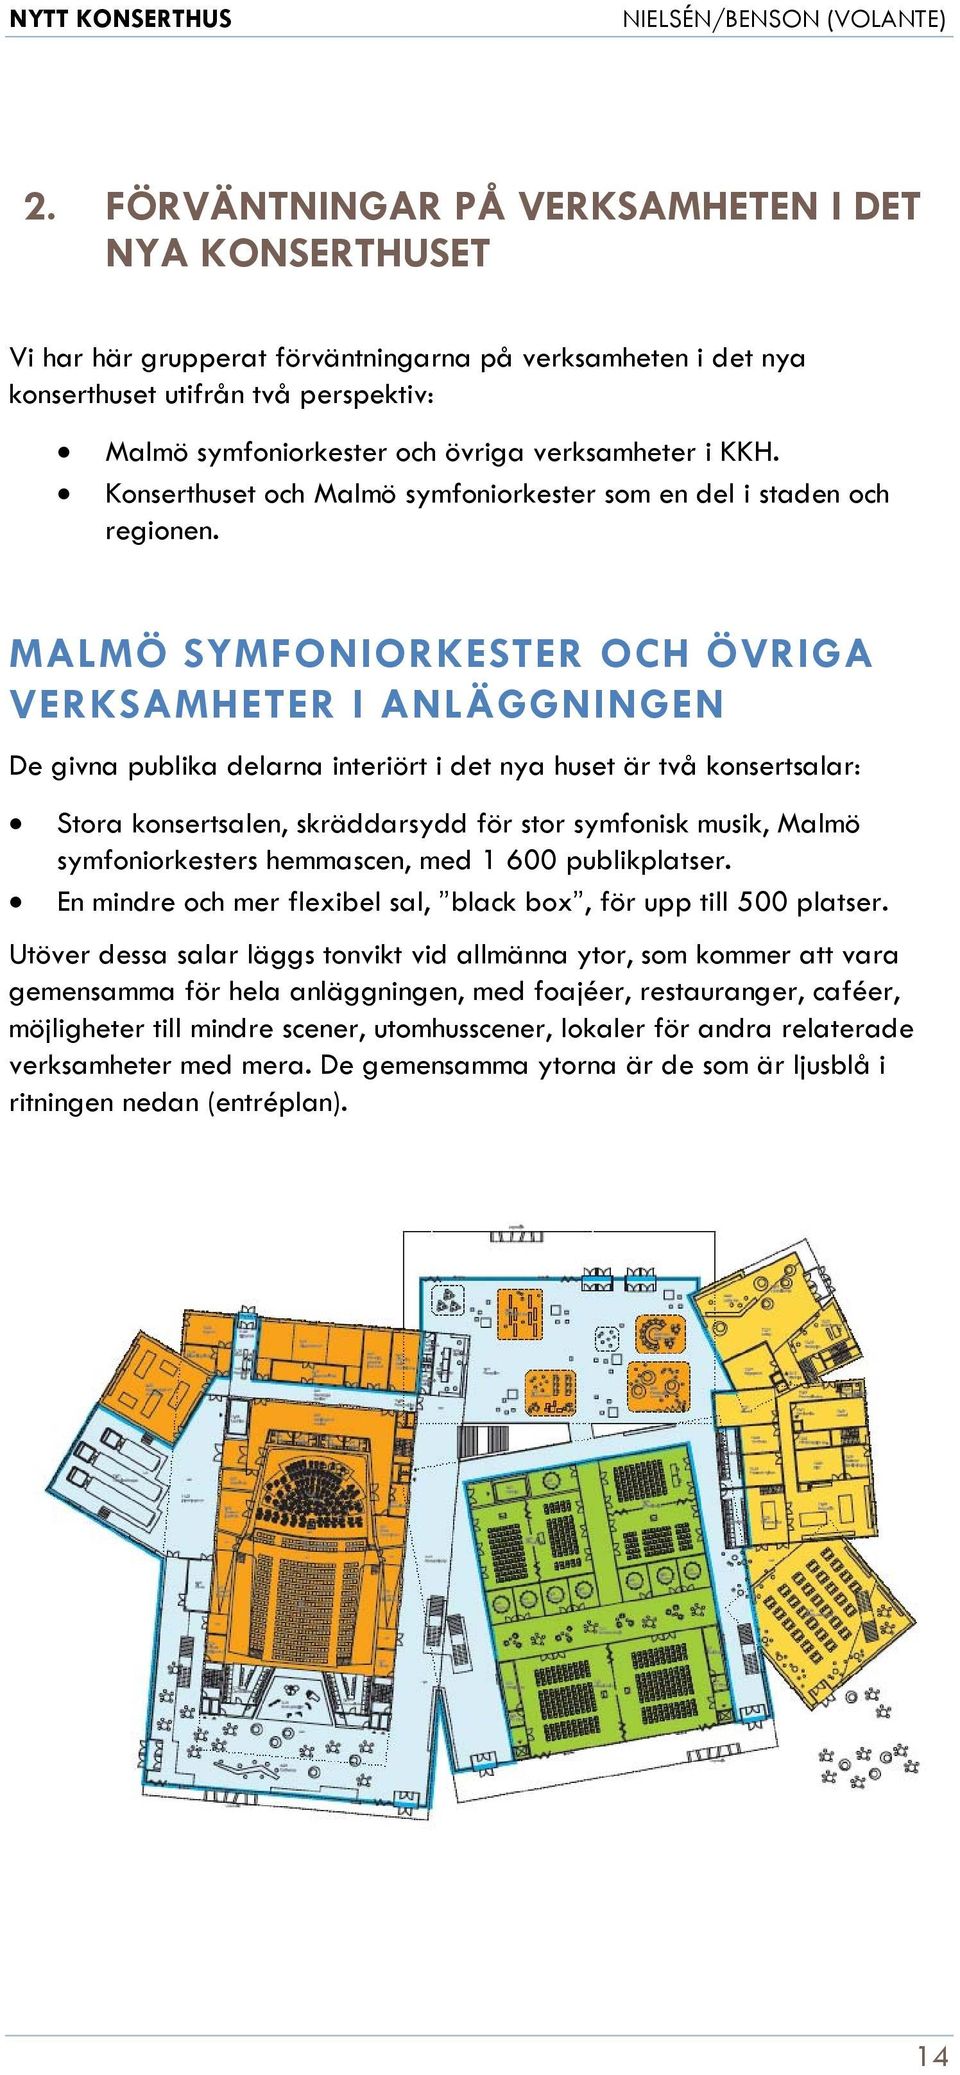 MALMÖ SYMFONIORKESTER OCH ÖVRIGA VERKSAMHETER I ANLÄGGNINGEN De givna publika delarna interiört i det nya huset är två konsertsalar: Stora konsertsalen, skräddarsydd för stor symfonisk musik, Malmö